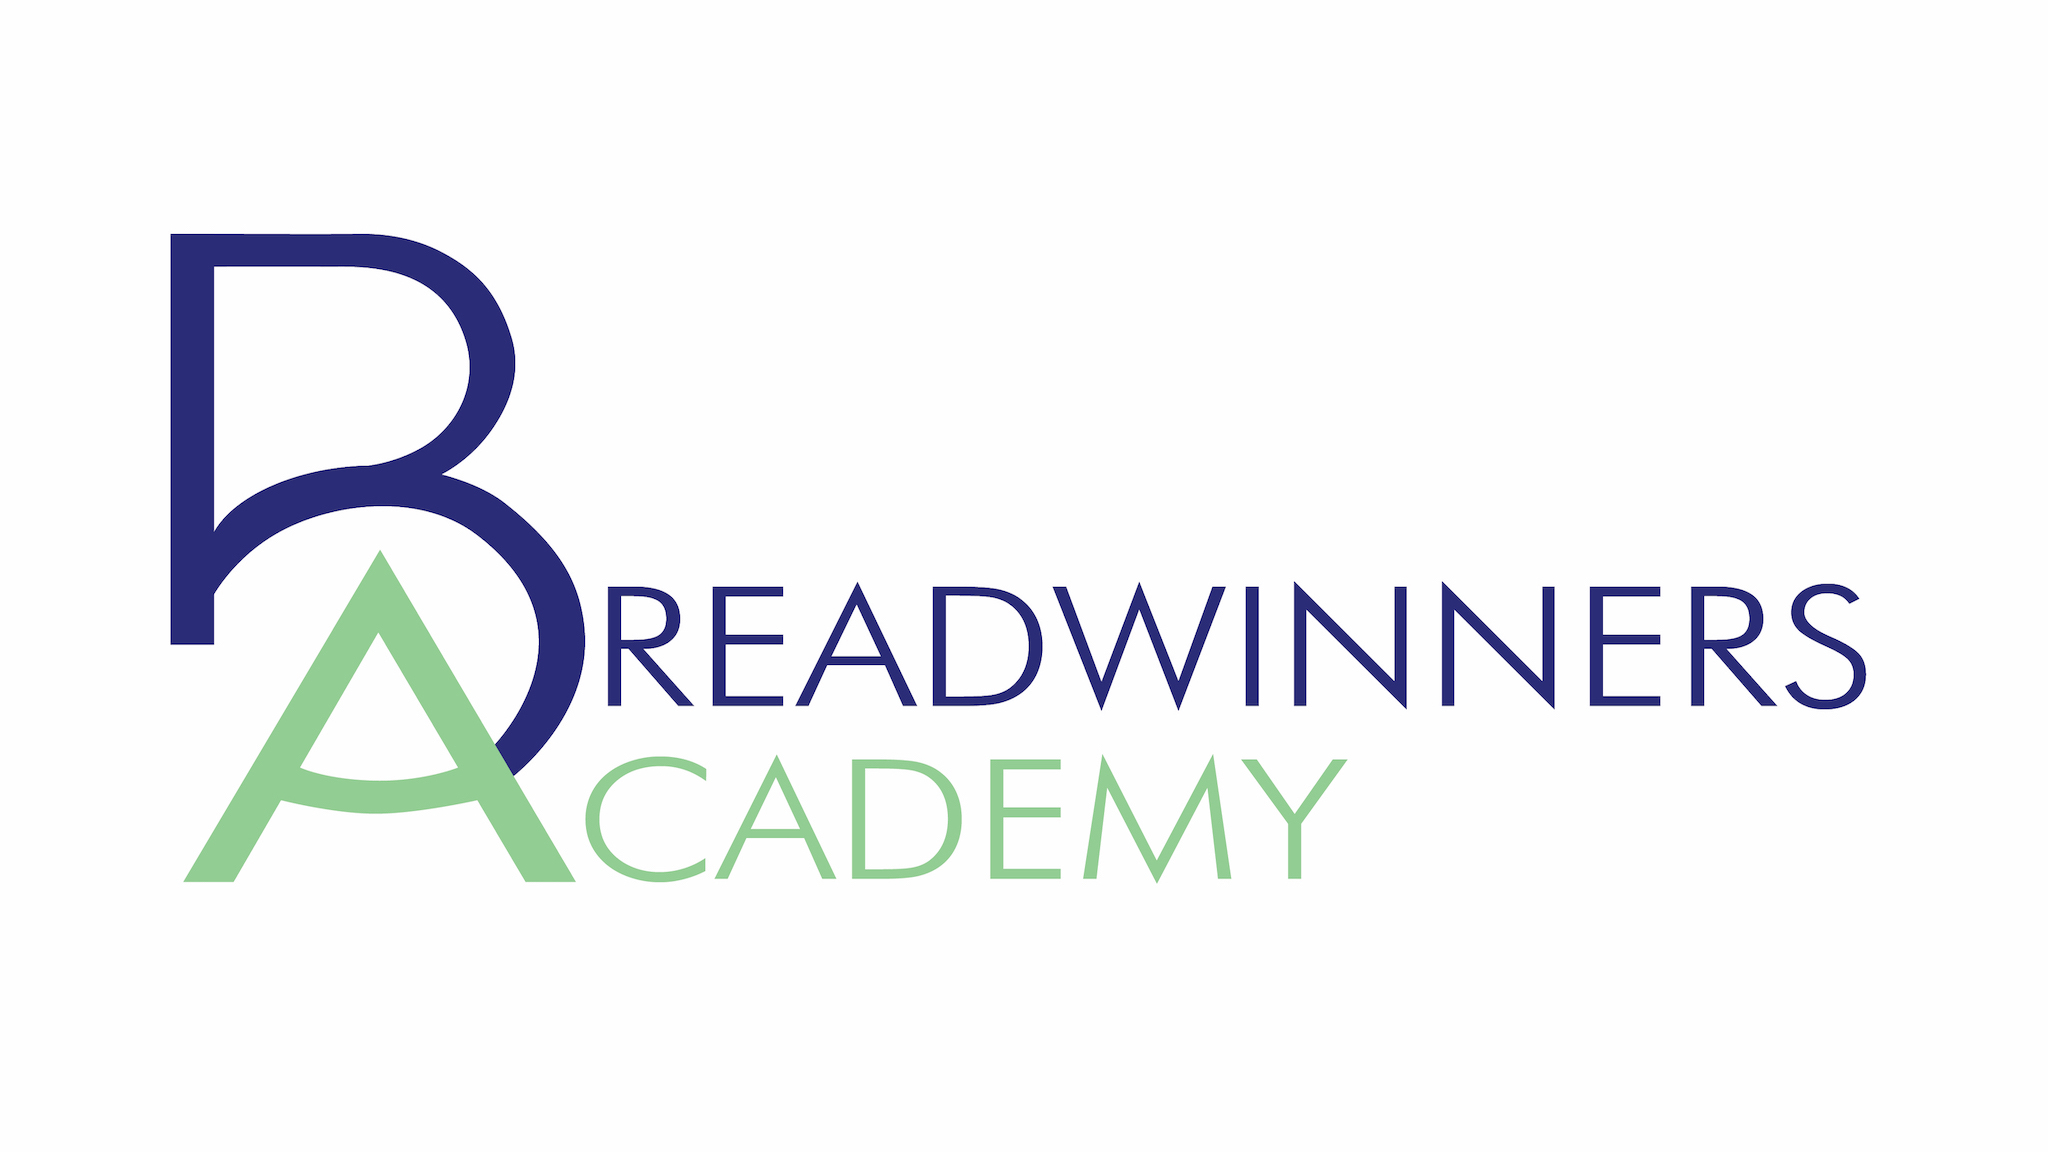 Breadwinners Academy logo